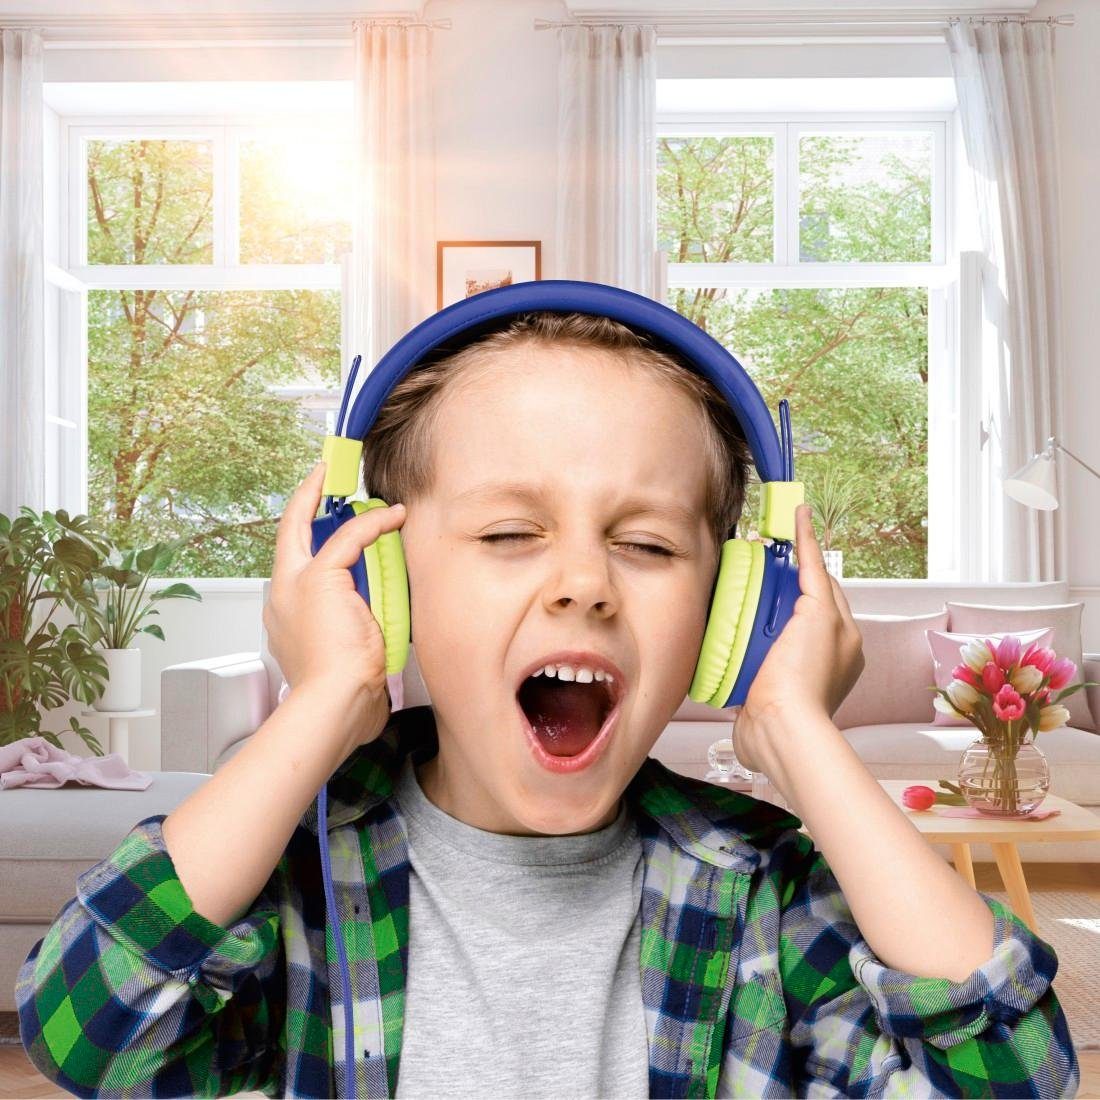 leicht On-Ear, (größenverstellbar On-Ear-Kopfhörer auf mit Thomson blau Lautstärkebegrenzung Kinderkopfhörer weiterer Kopfhöreranschluss möglich) Kabel 85dB zusammenfaltbar,